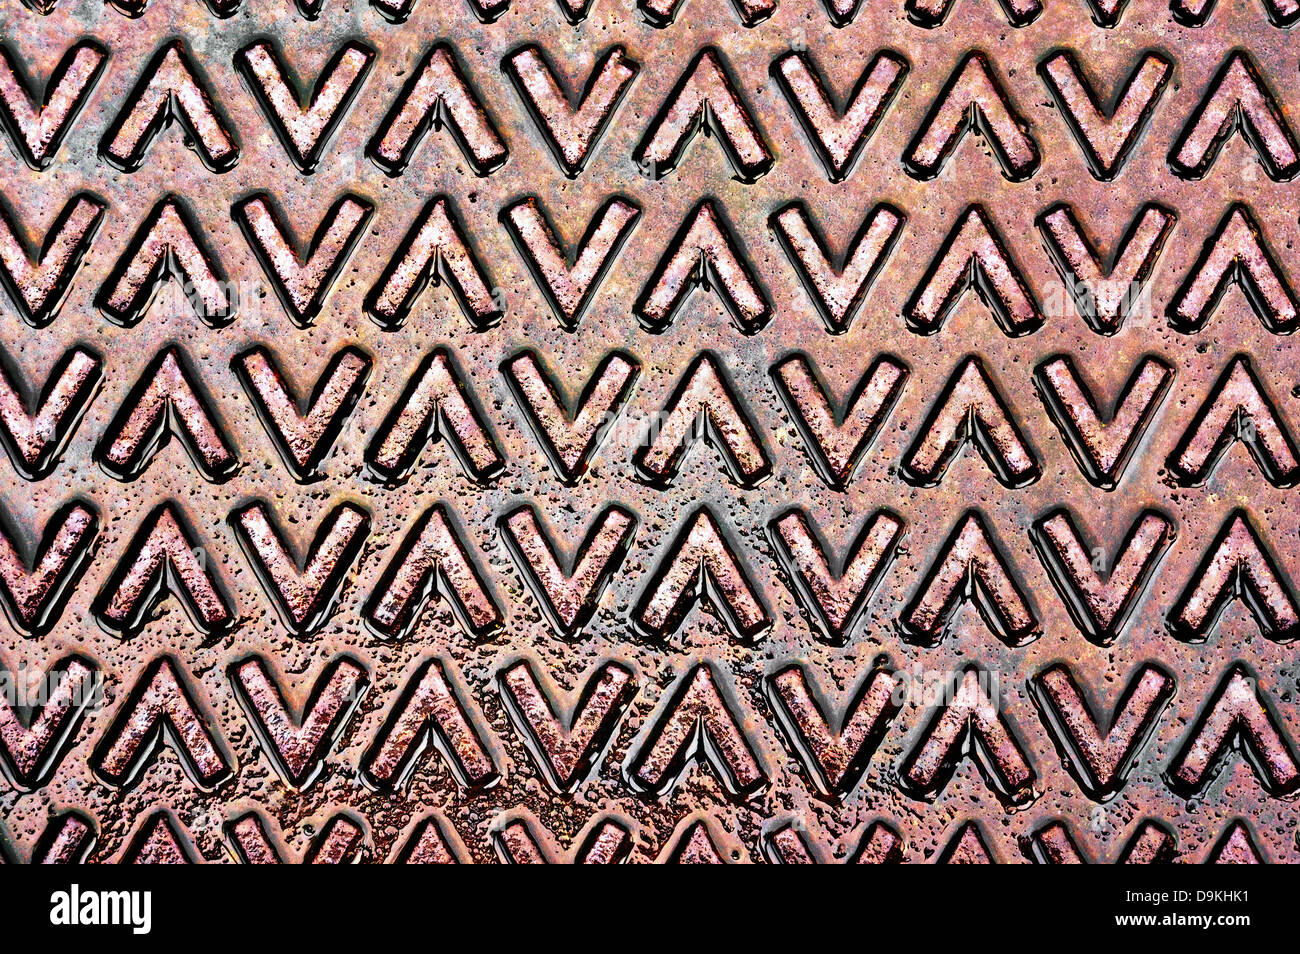 metallische Textur mit größer als und kleiner als Symbol auf einem nassen Abwasserkanal-cover Stockfoto